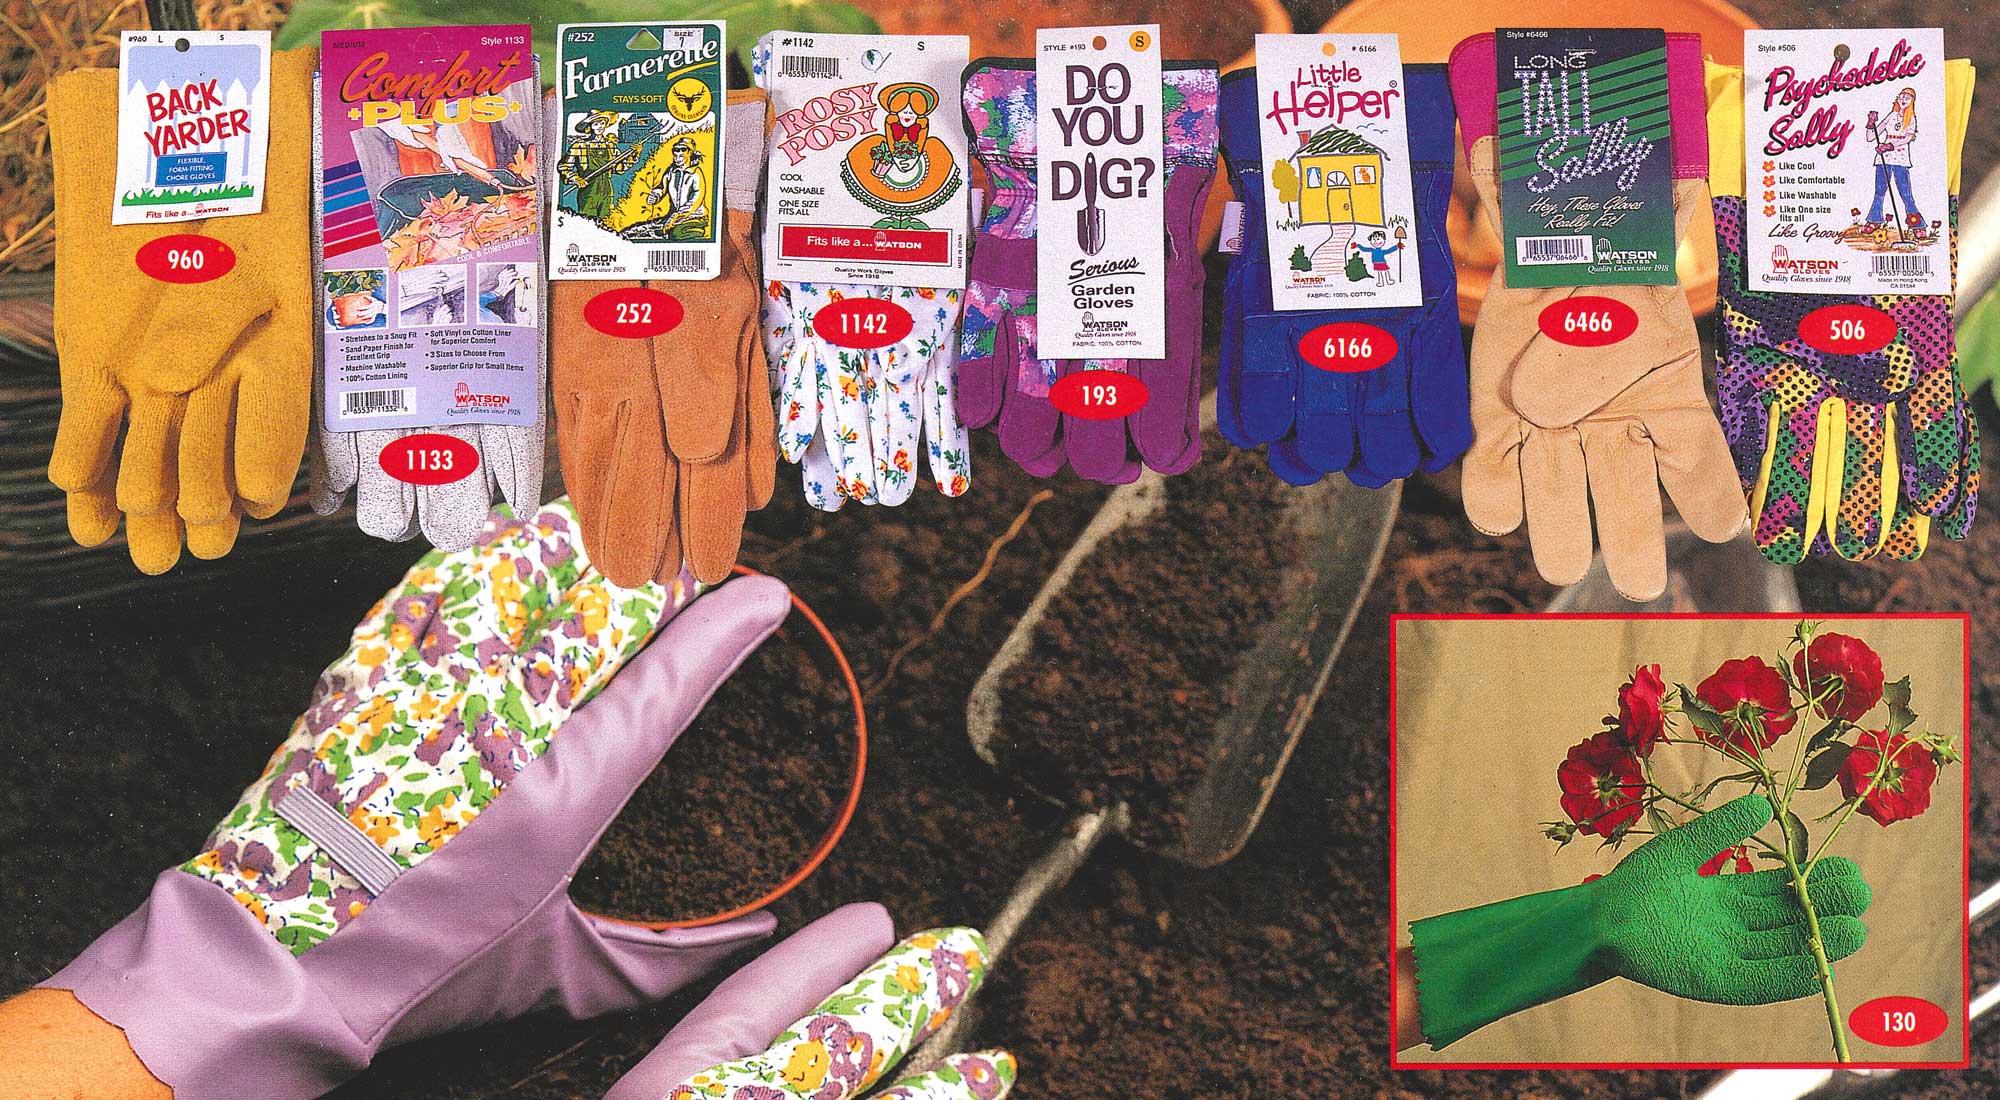 Retro Gardening Gloves from Watson Gloves